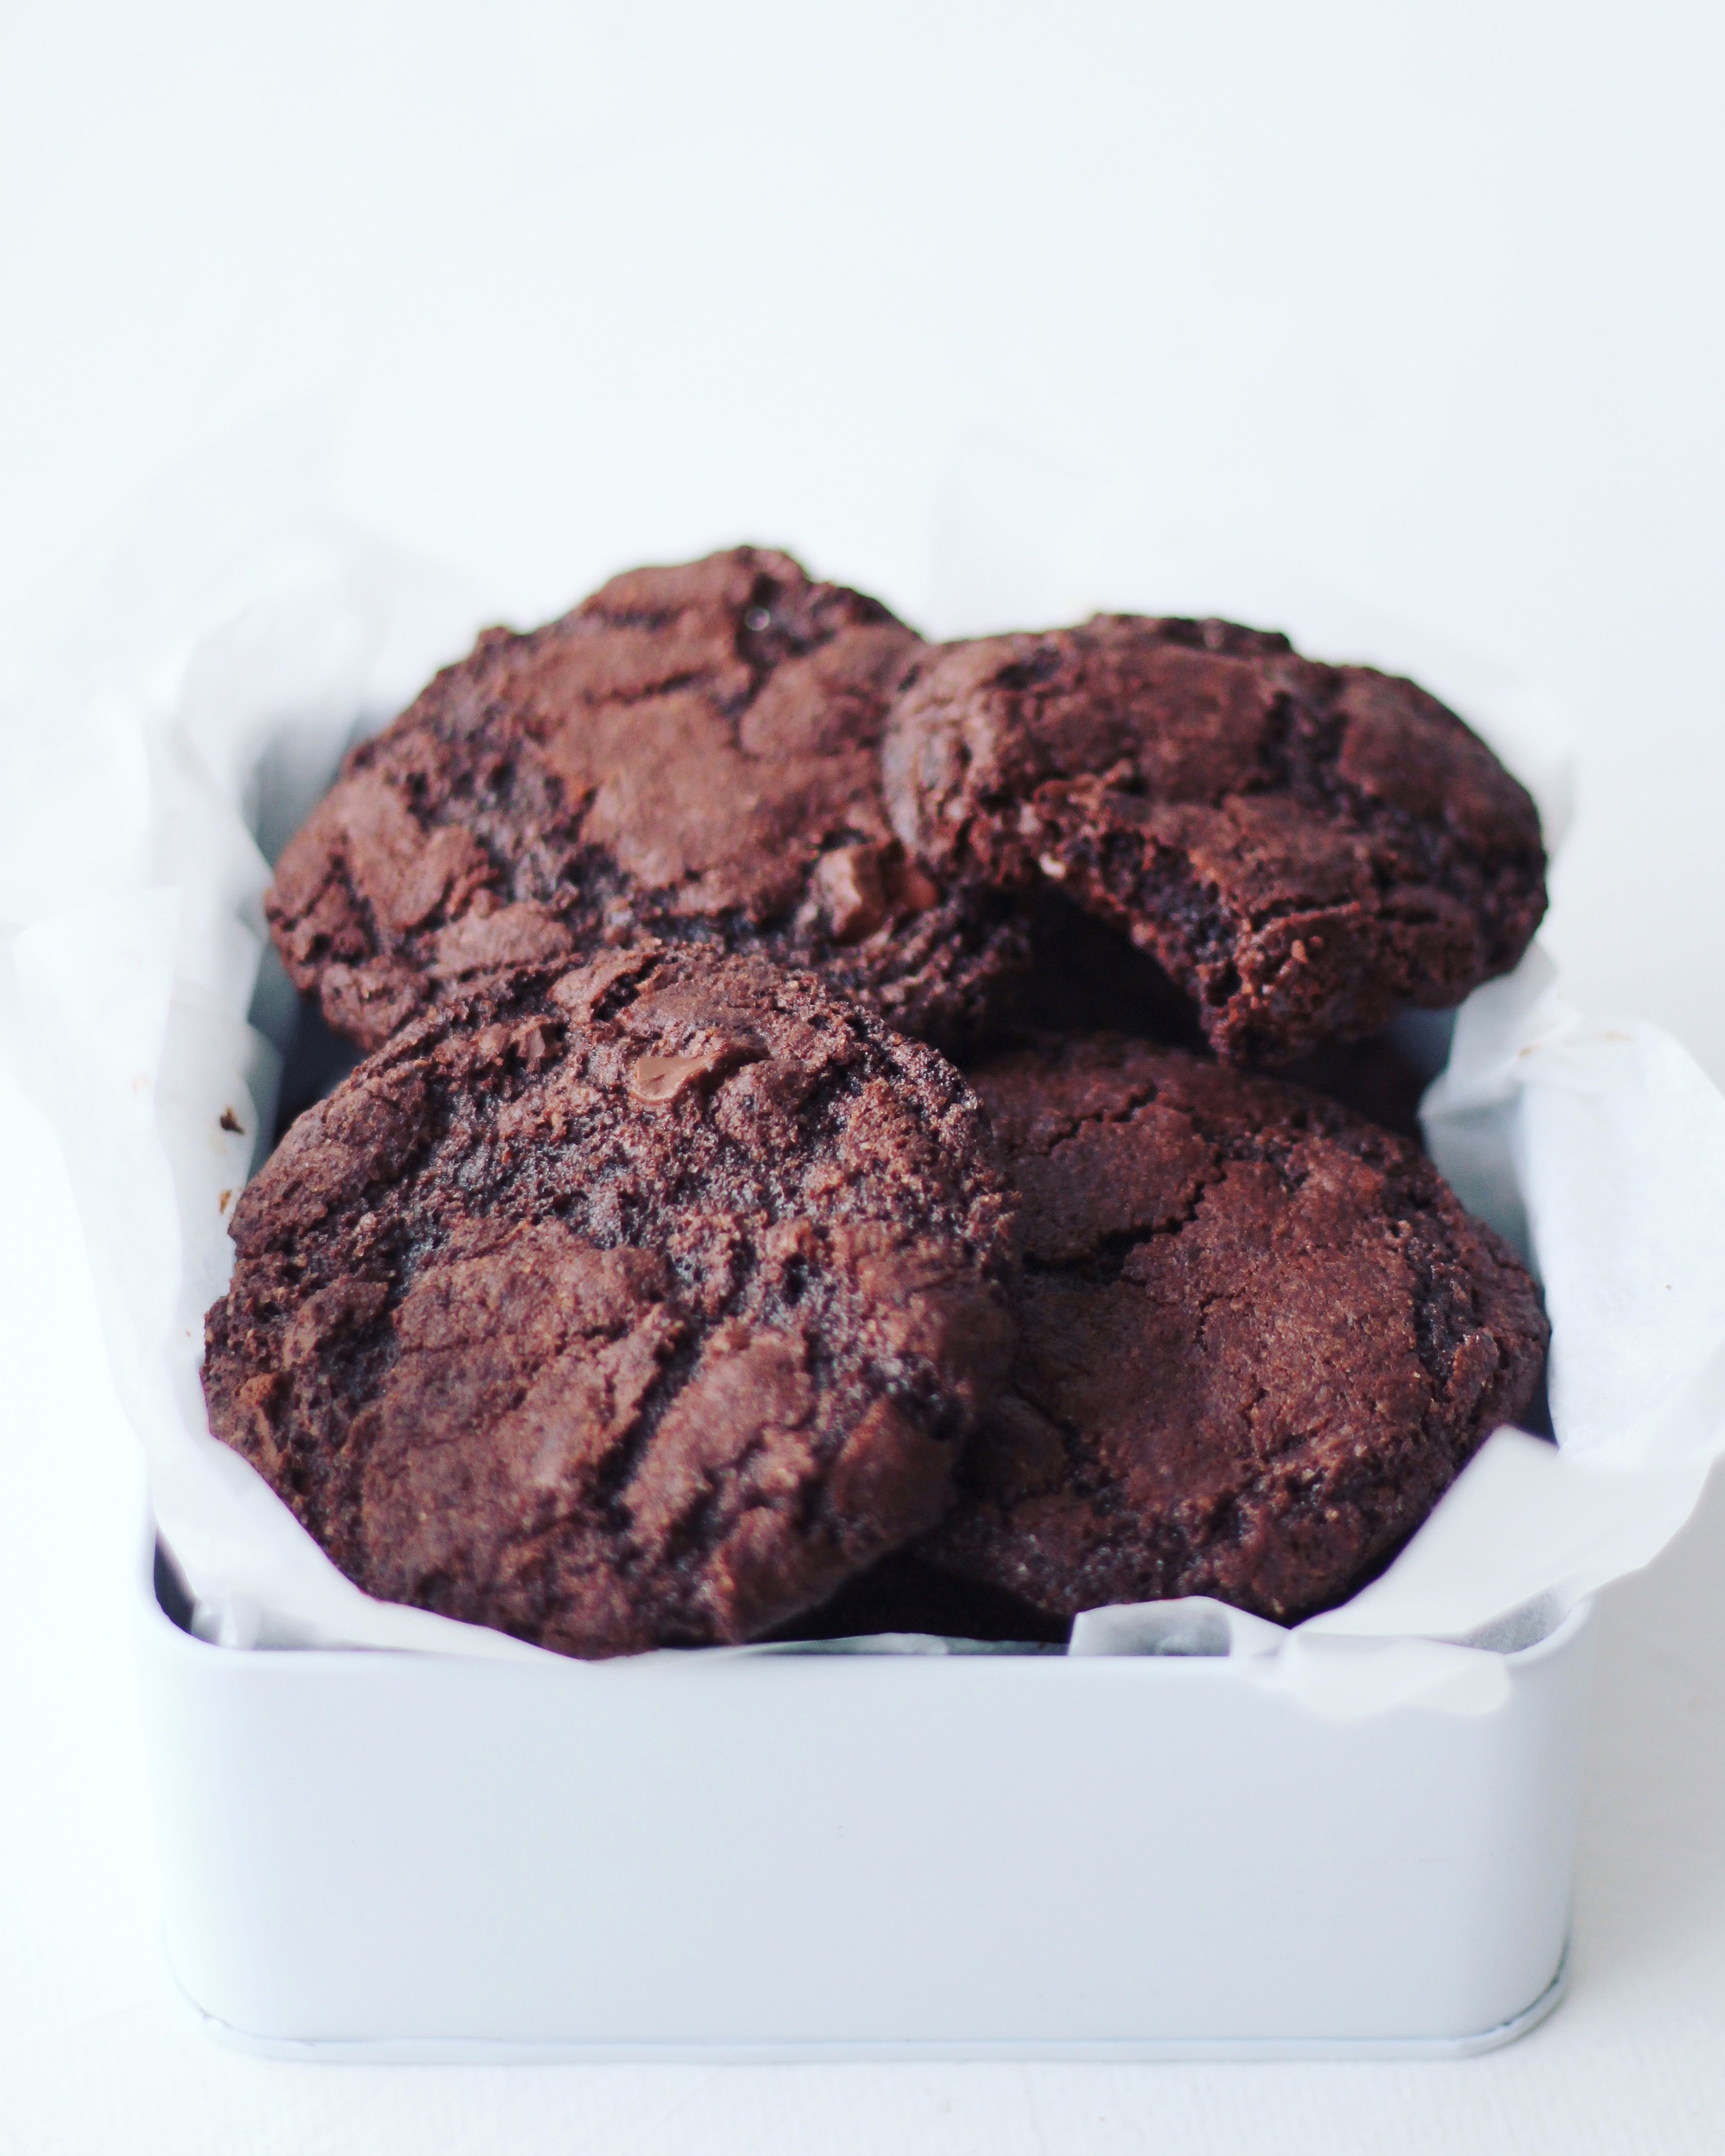 Sundere chokoladecookies